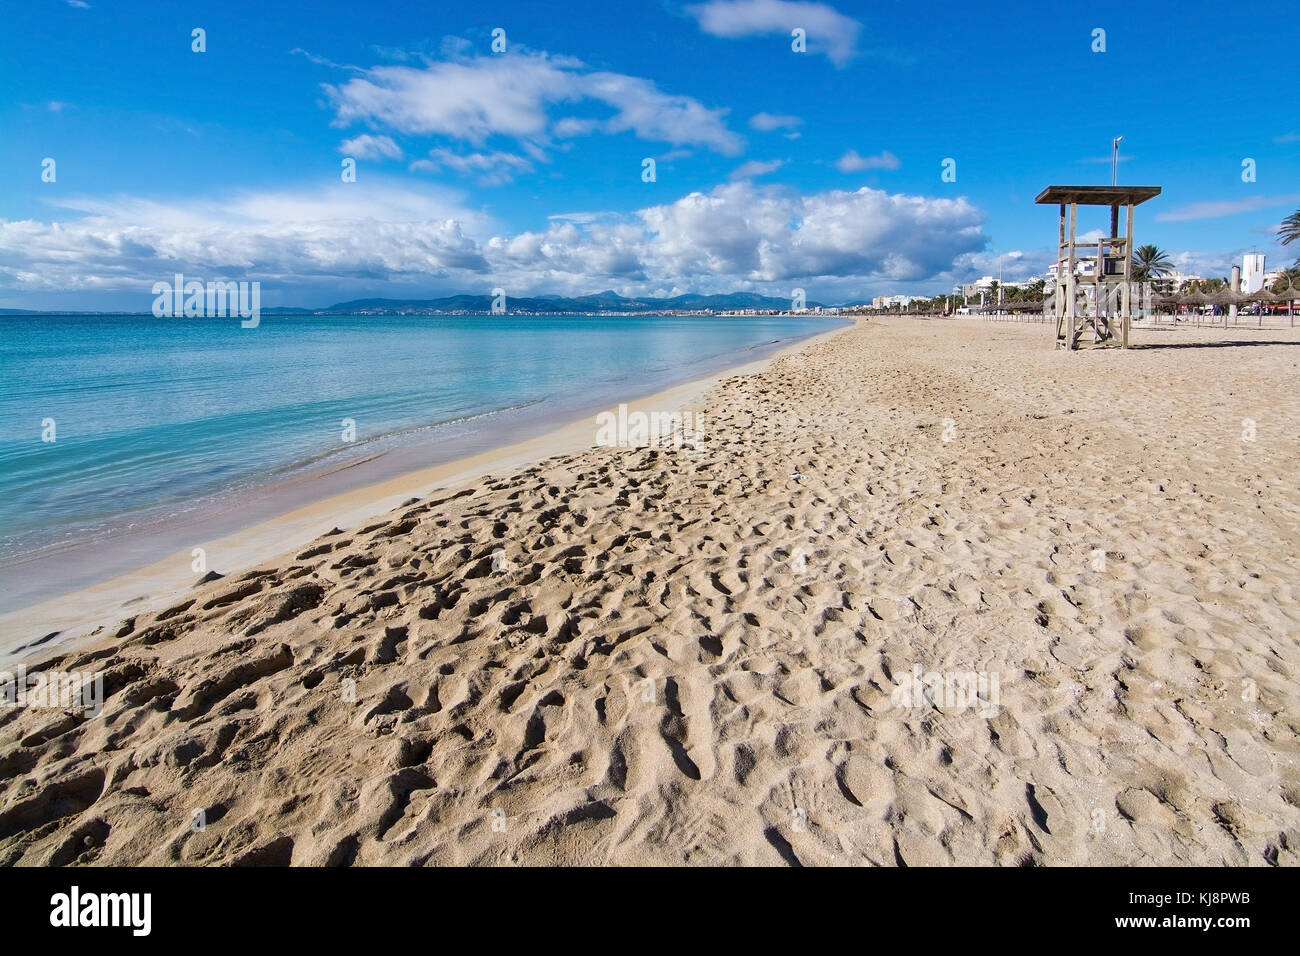 Maiorca, isole Baleari, Spagna - 9 novembre 2017: spiaggia playa de palma e Verde oceano turchese acqua in una giornata di sole il 9 novembre 2017 in mallor Foto Stock